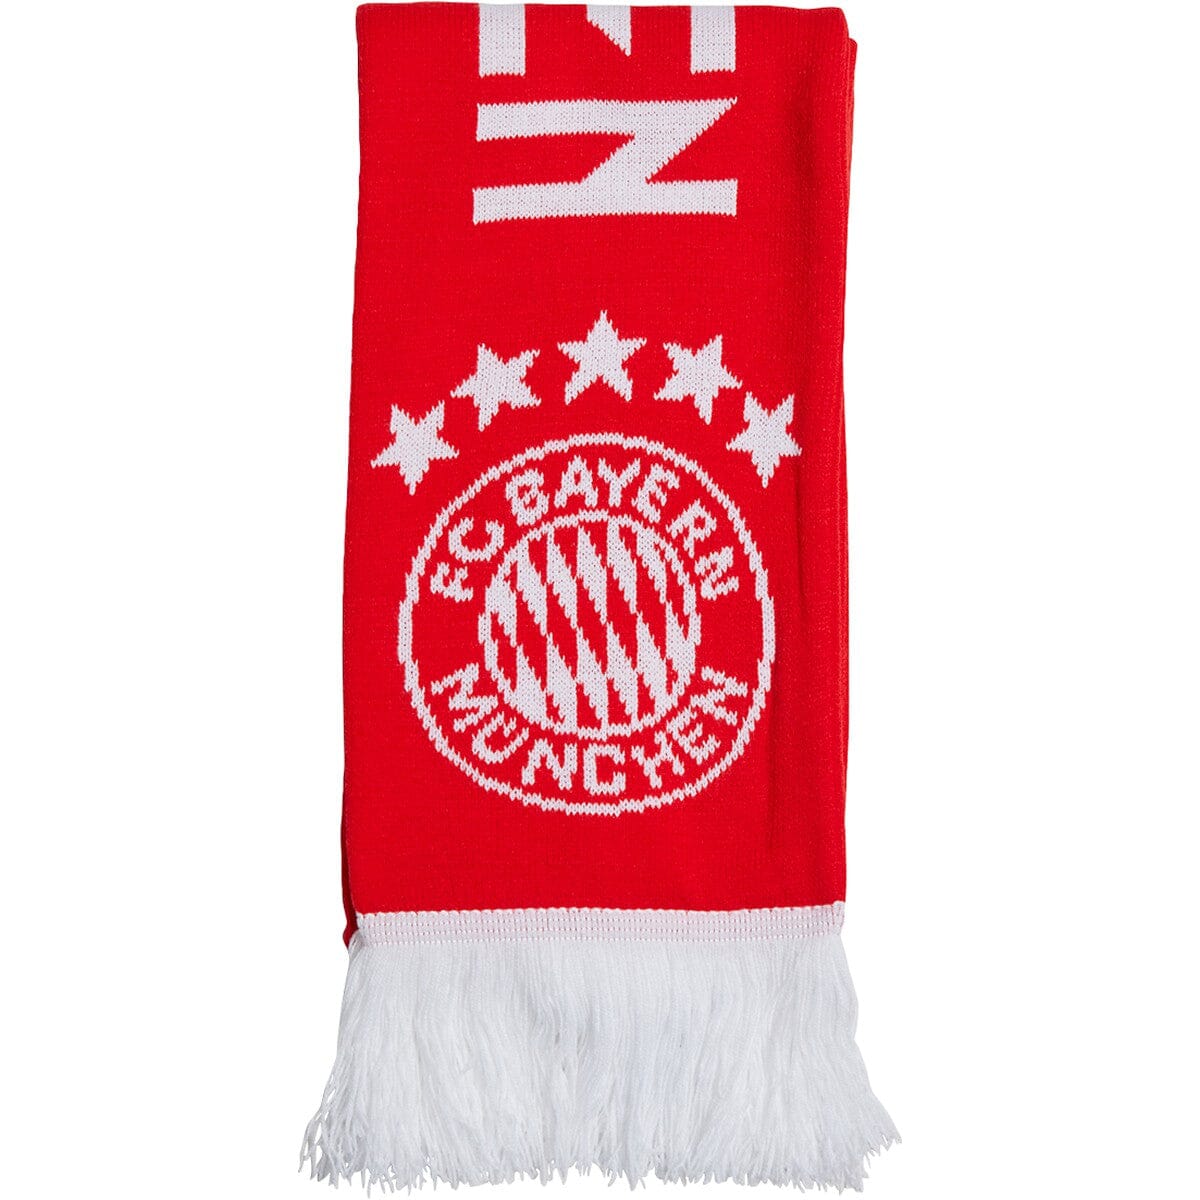 adidas FCB - Bayern Munich Scarf - Home | IB4587 Scarf Adidas 